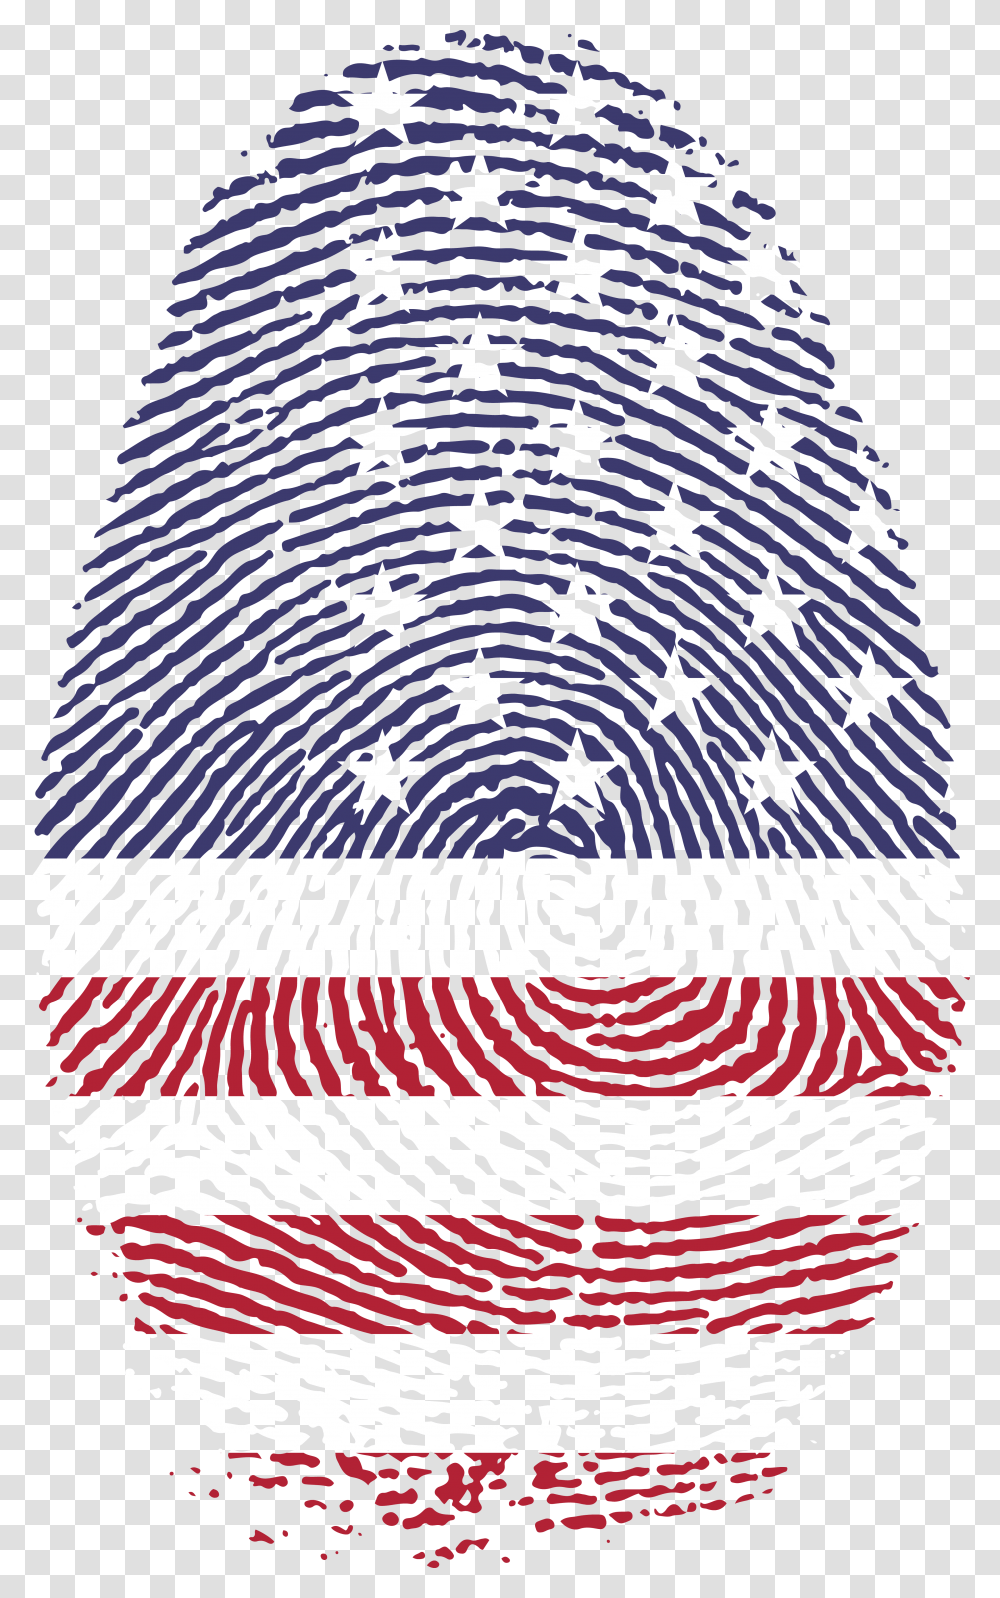 Free Clipart Of An American Patterned Finger Print Background Fingerprint, Rug, Spiral, Ornament, Fractal Transparent Png